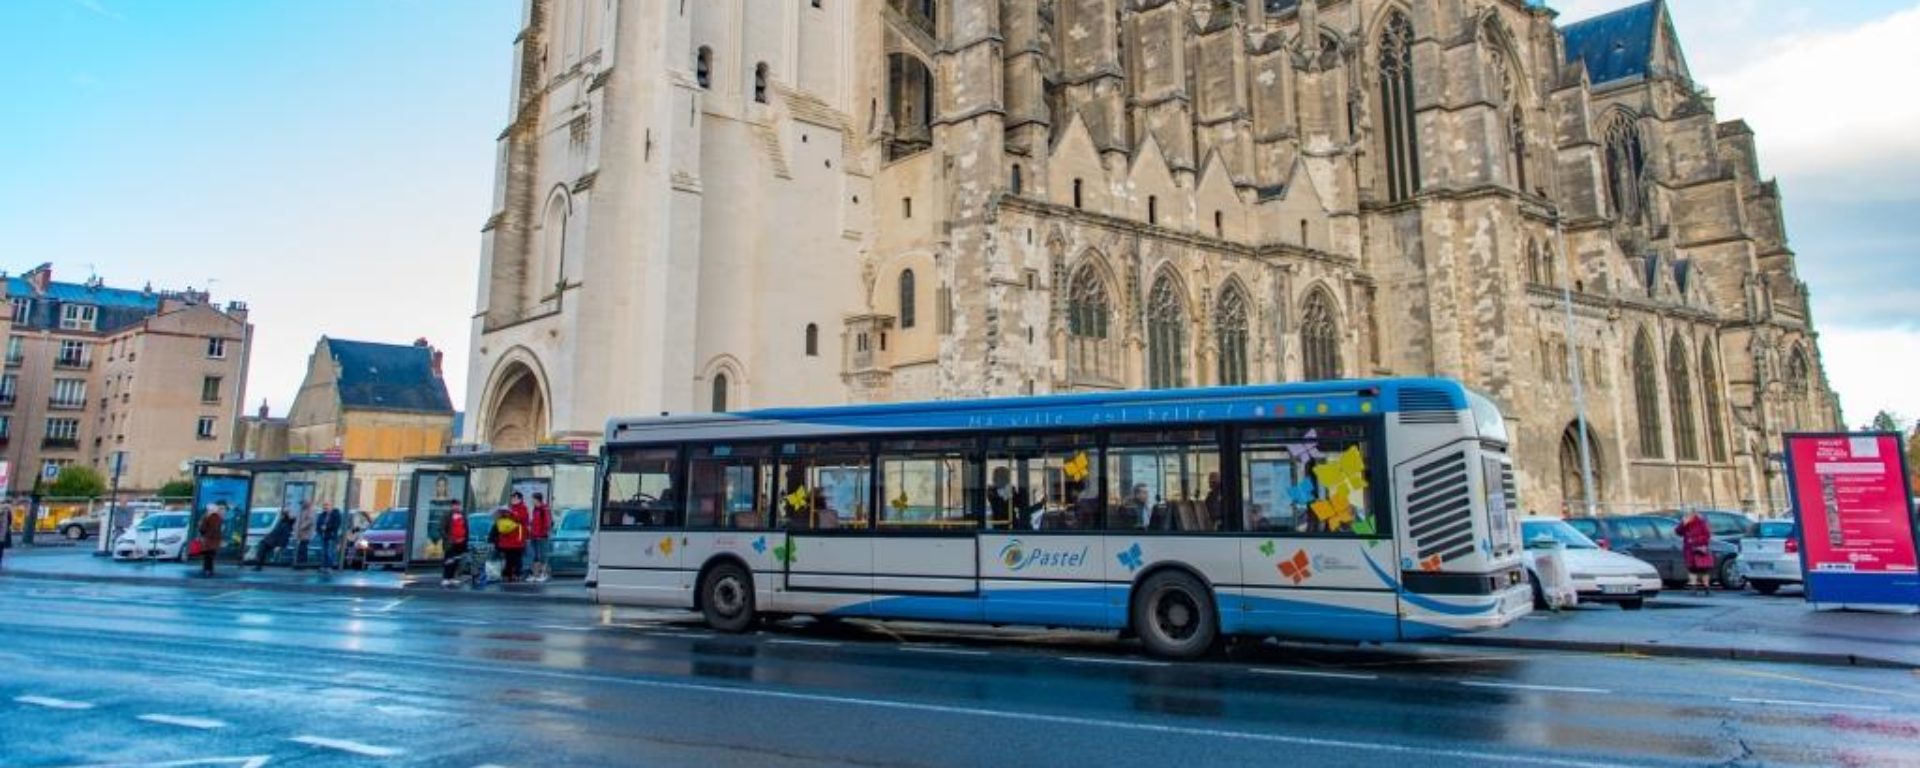 Bus_transport-urbain-Saint-Quentin_Pastel_Saint-Quentin-Mobilités_Transdev-Haut-de-France